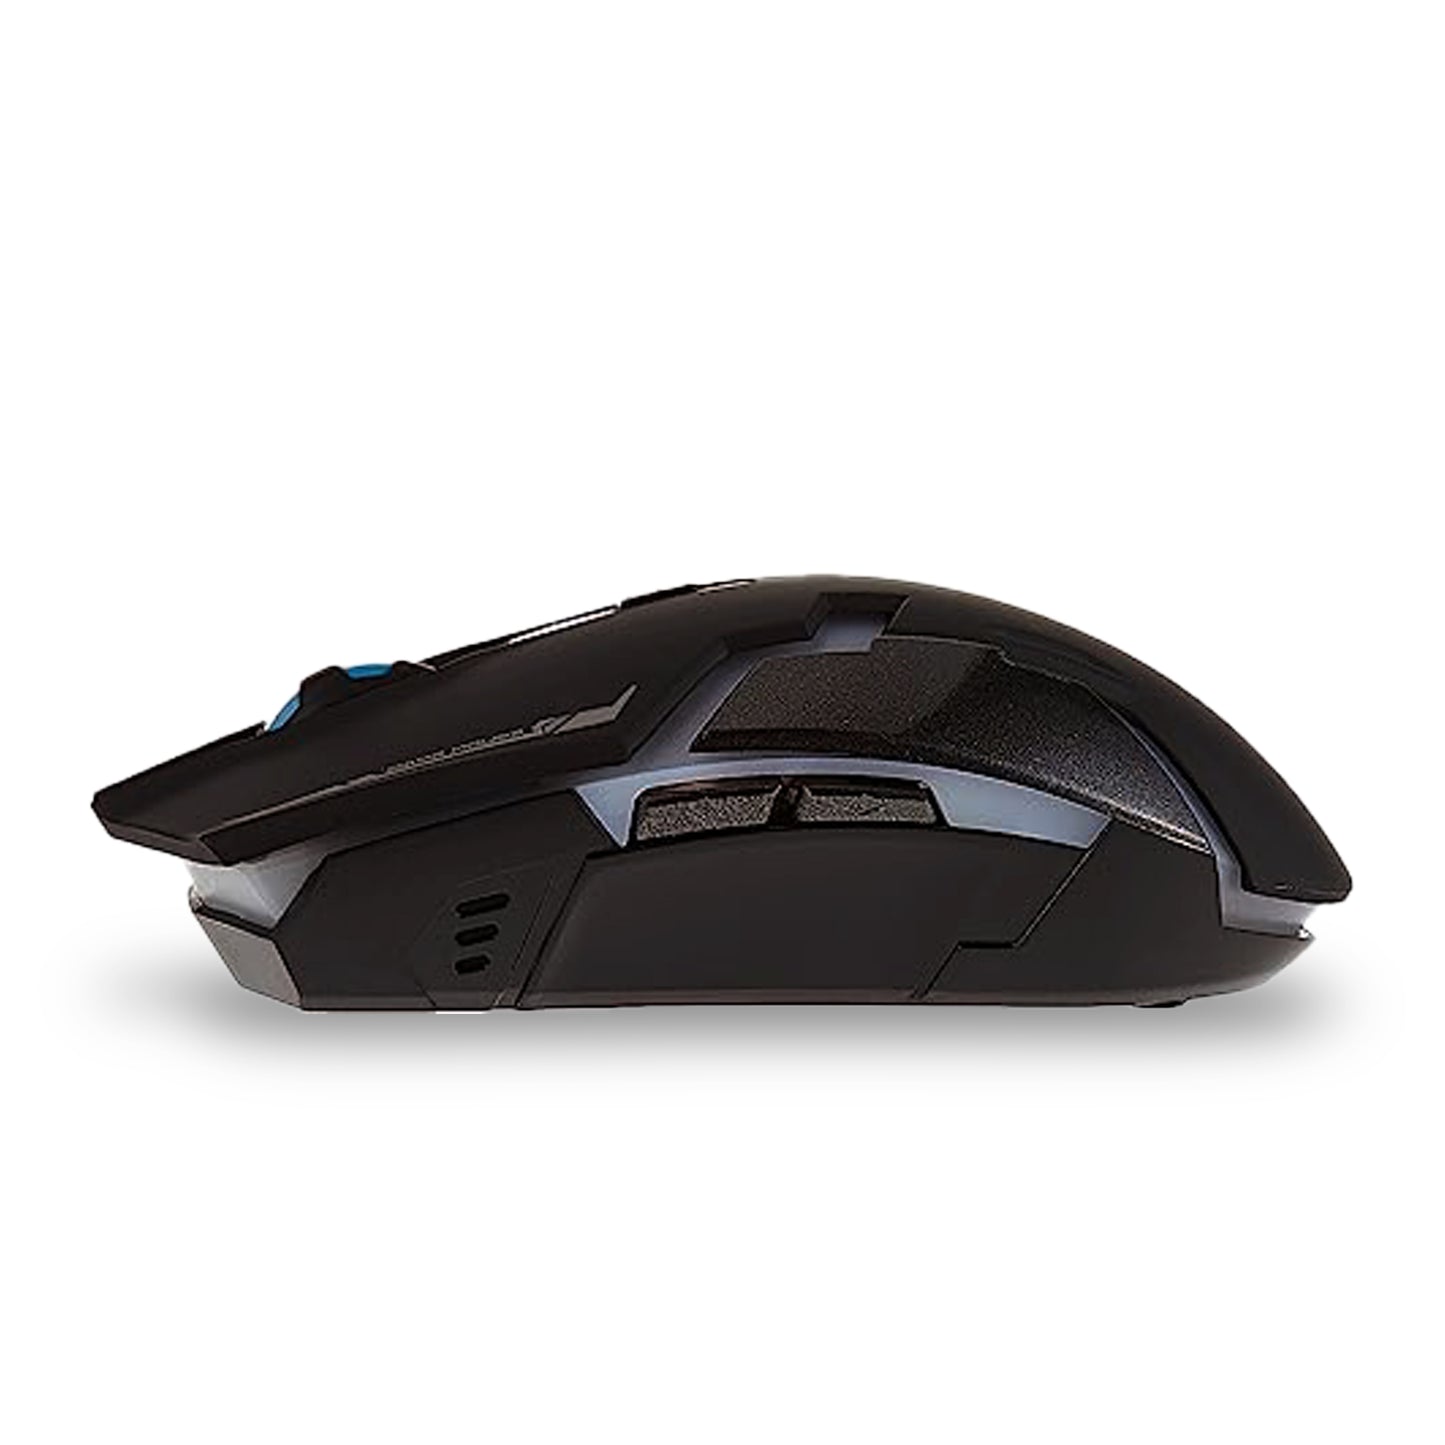 Havit HVMS997GT Wireless Gaming Mouse Black (HAVHVMS997GTBLK)